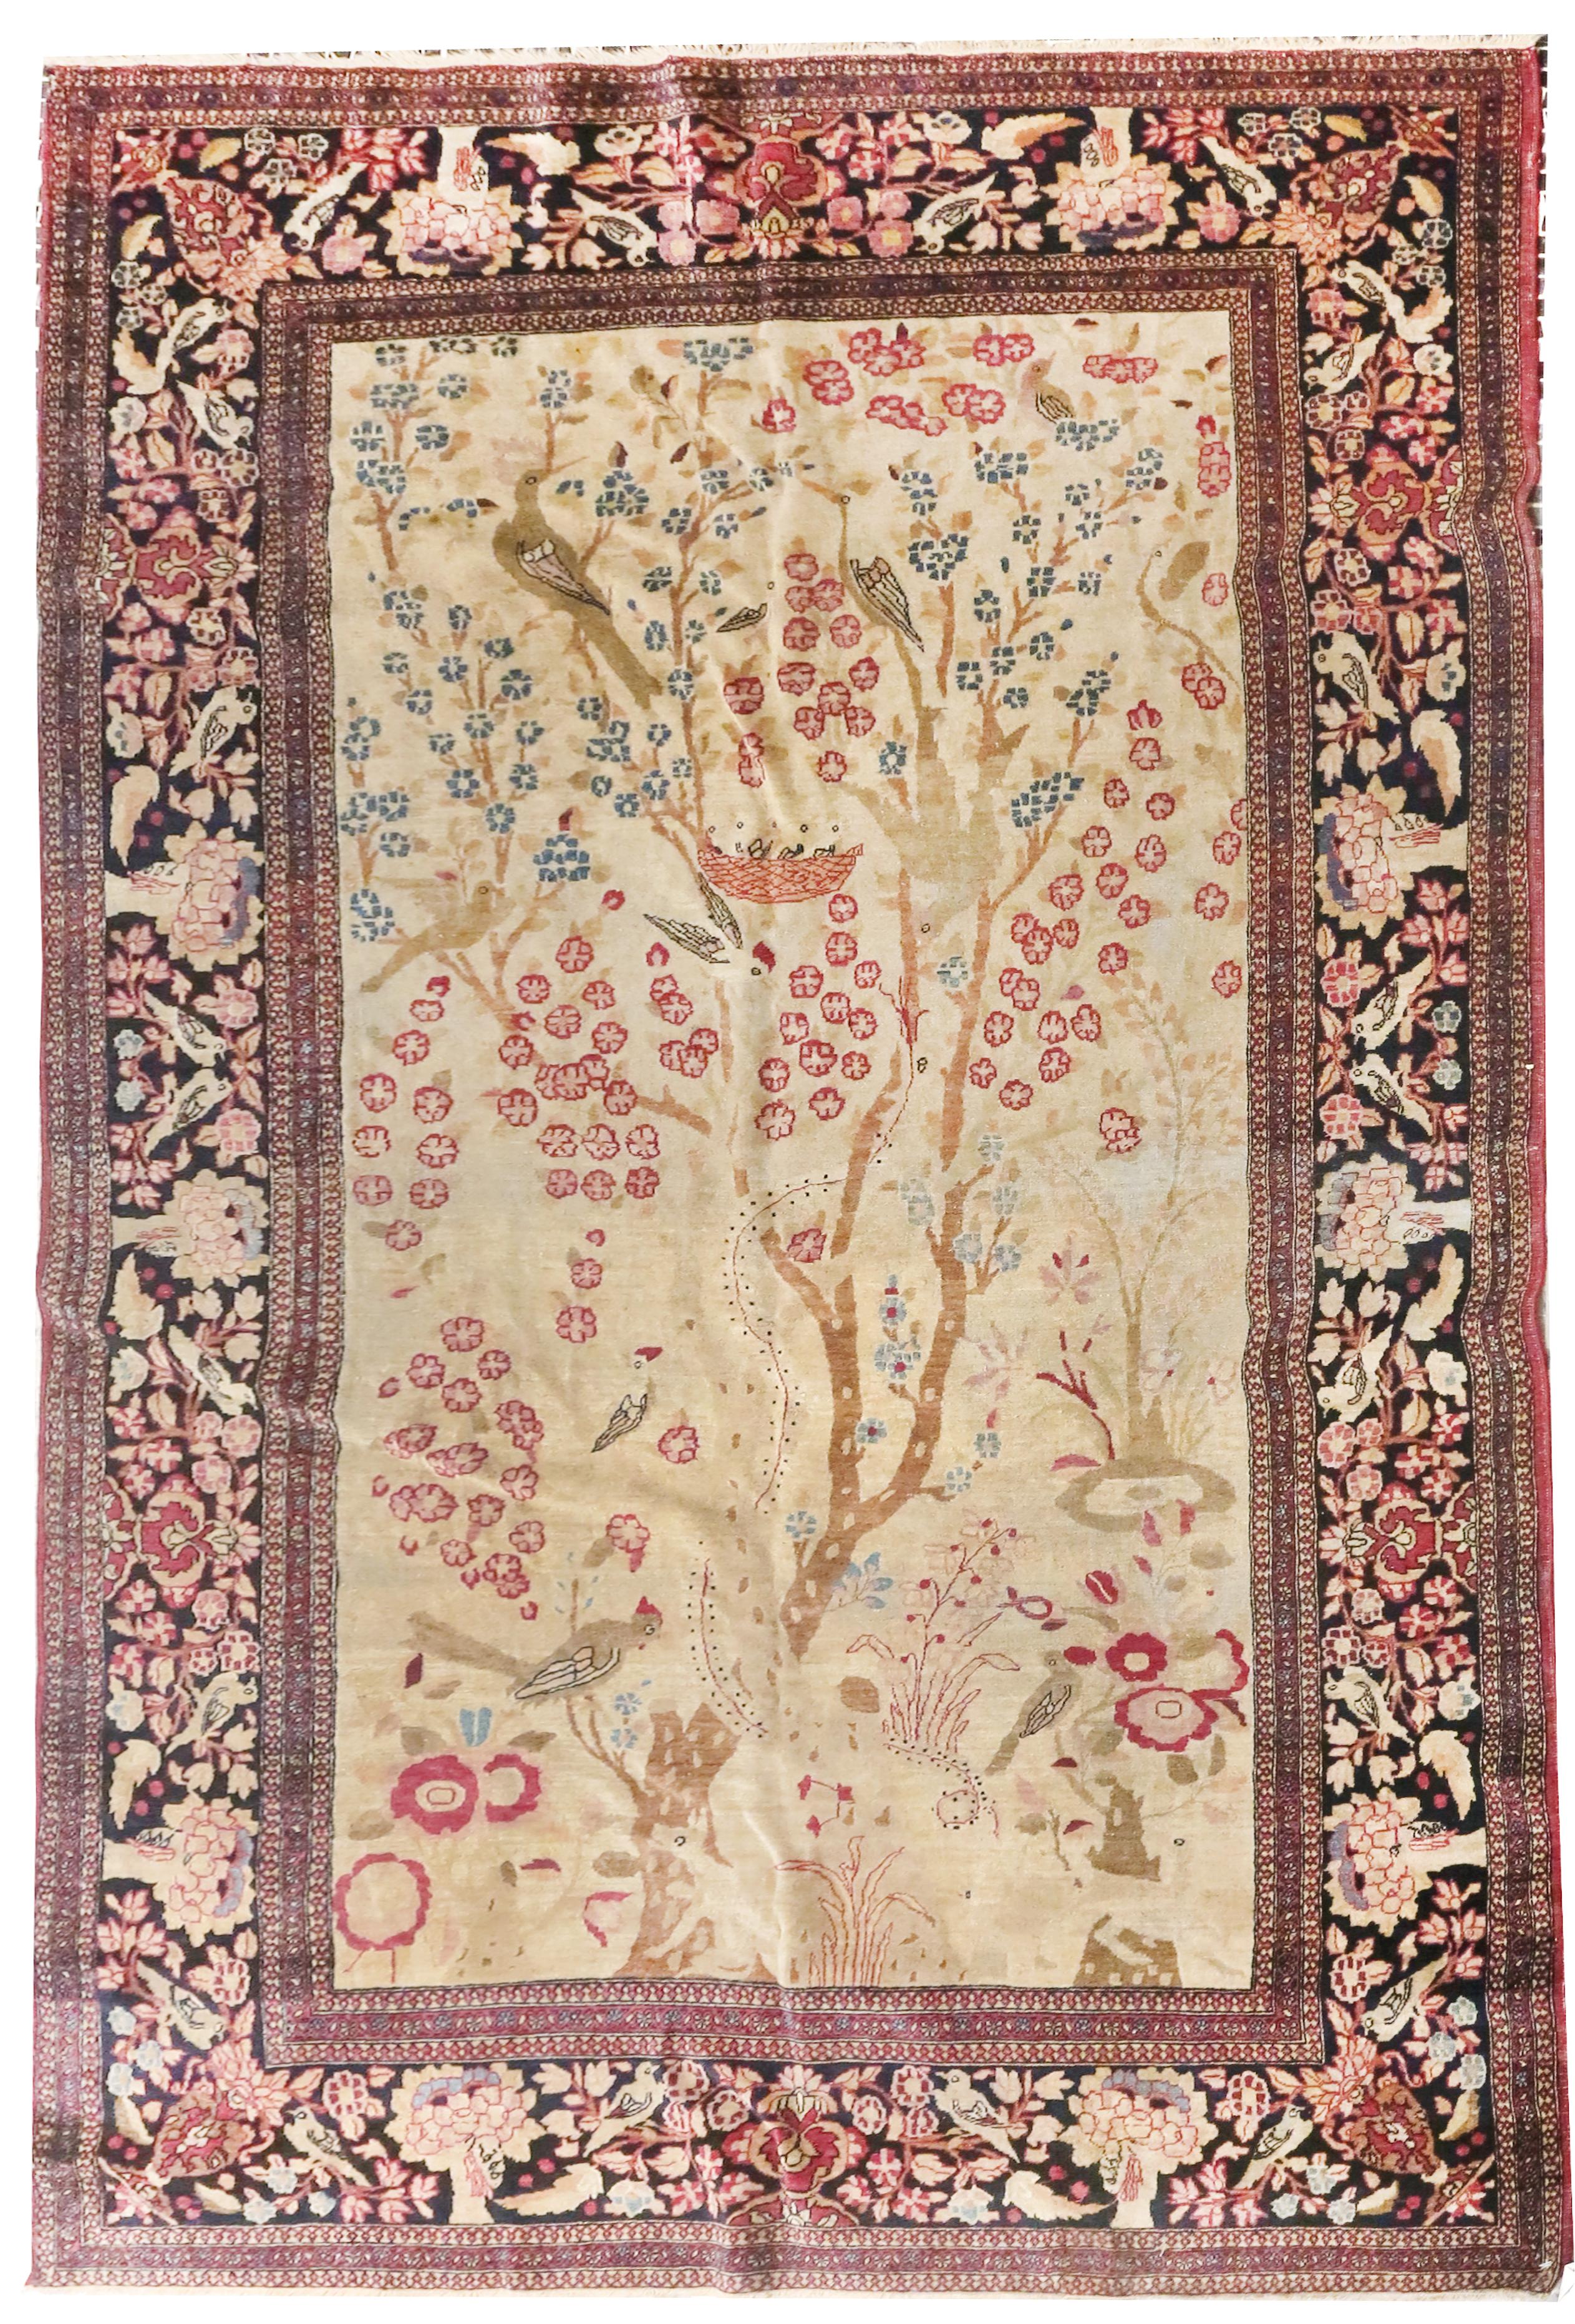 ahmadys persian rugs